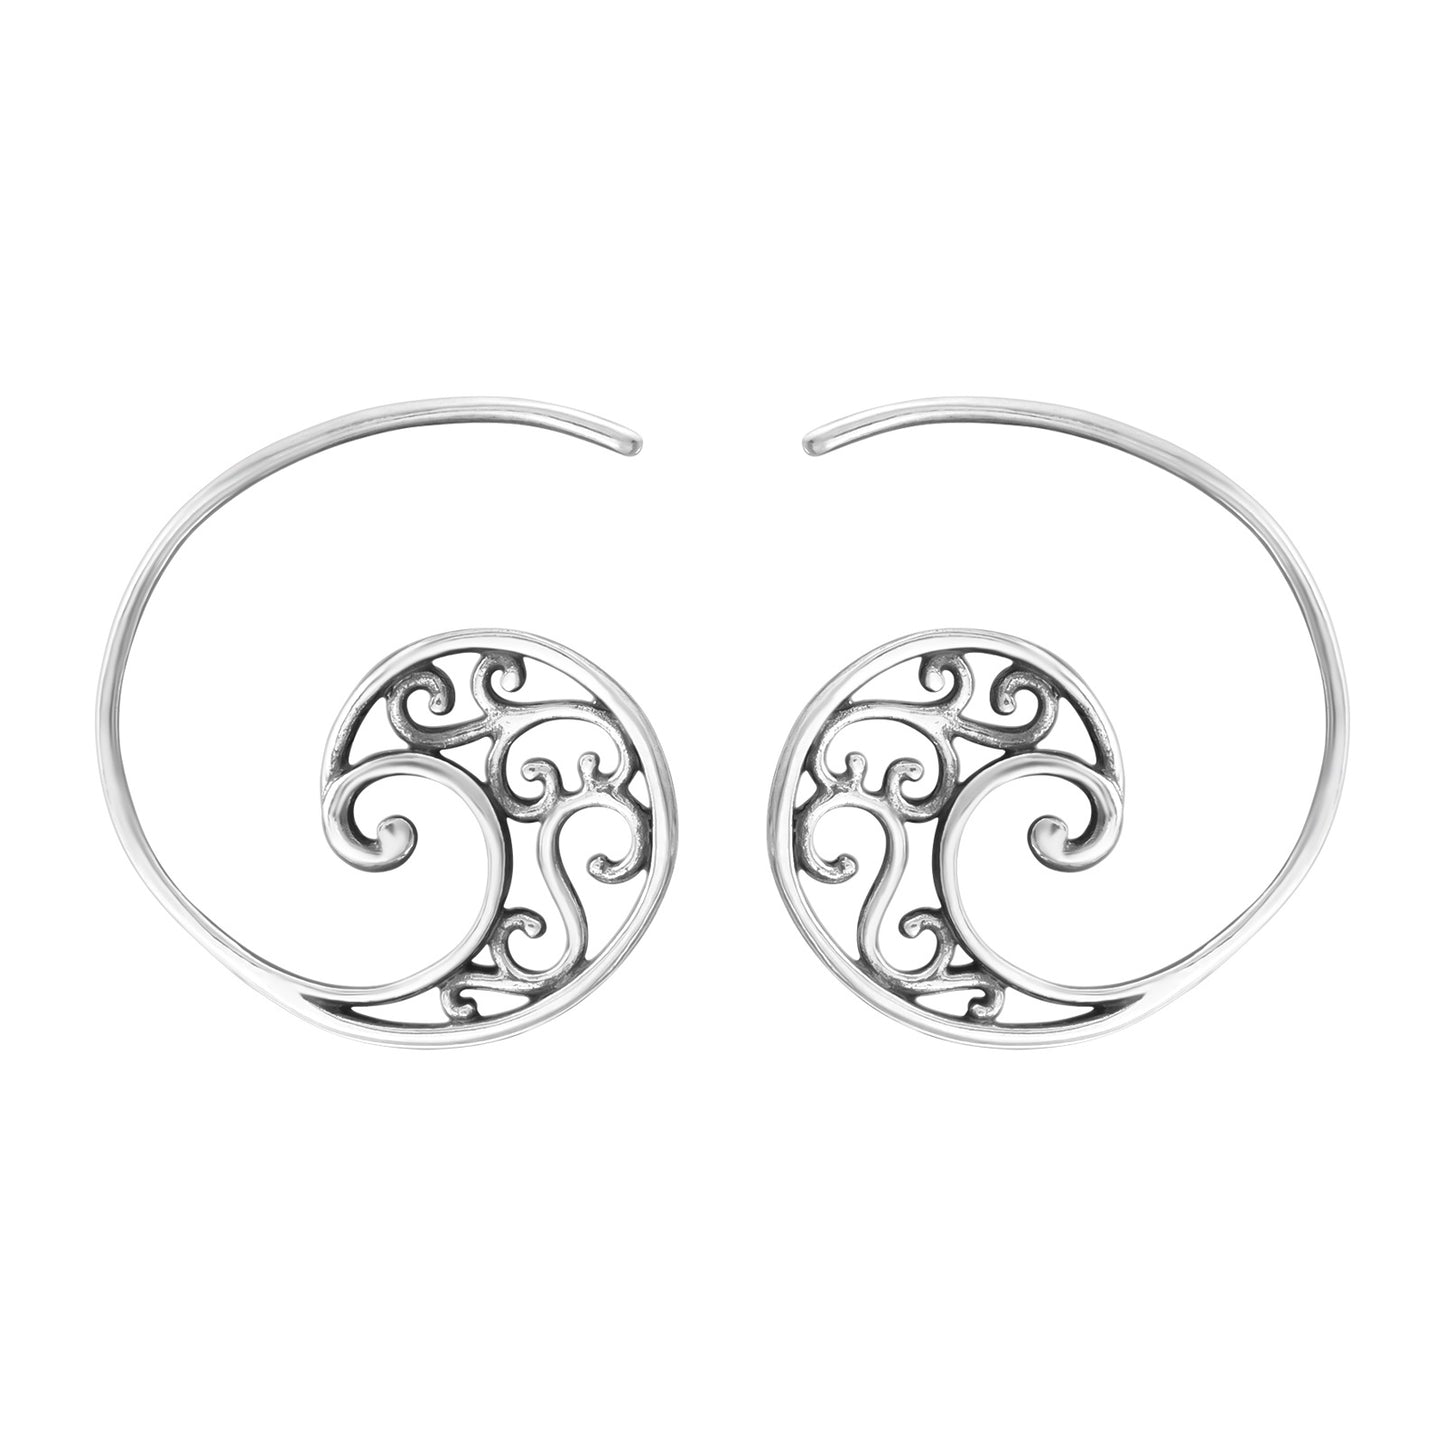 Spiral Filigree Coiled Hoop Earrings - Pair - 925 Sterling Silver